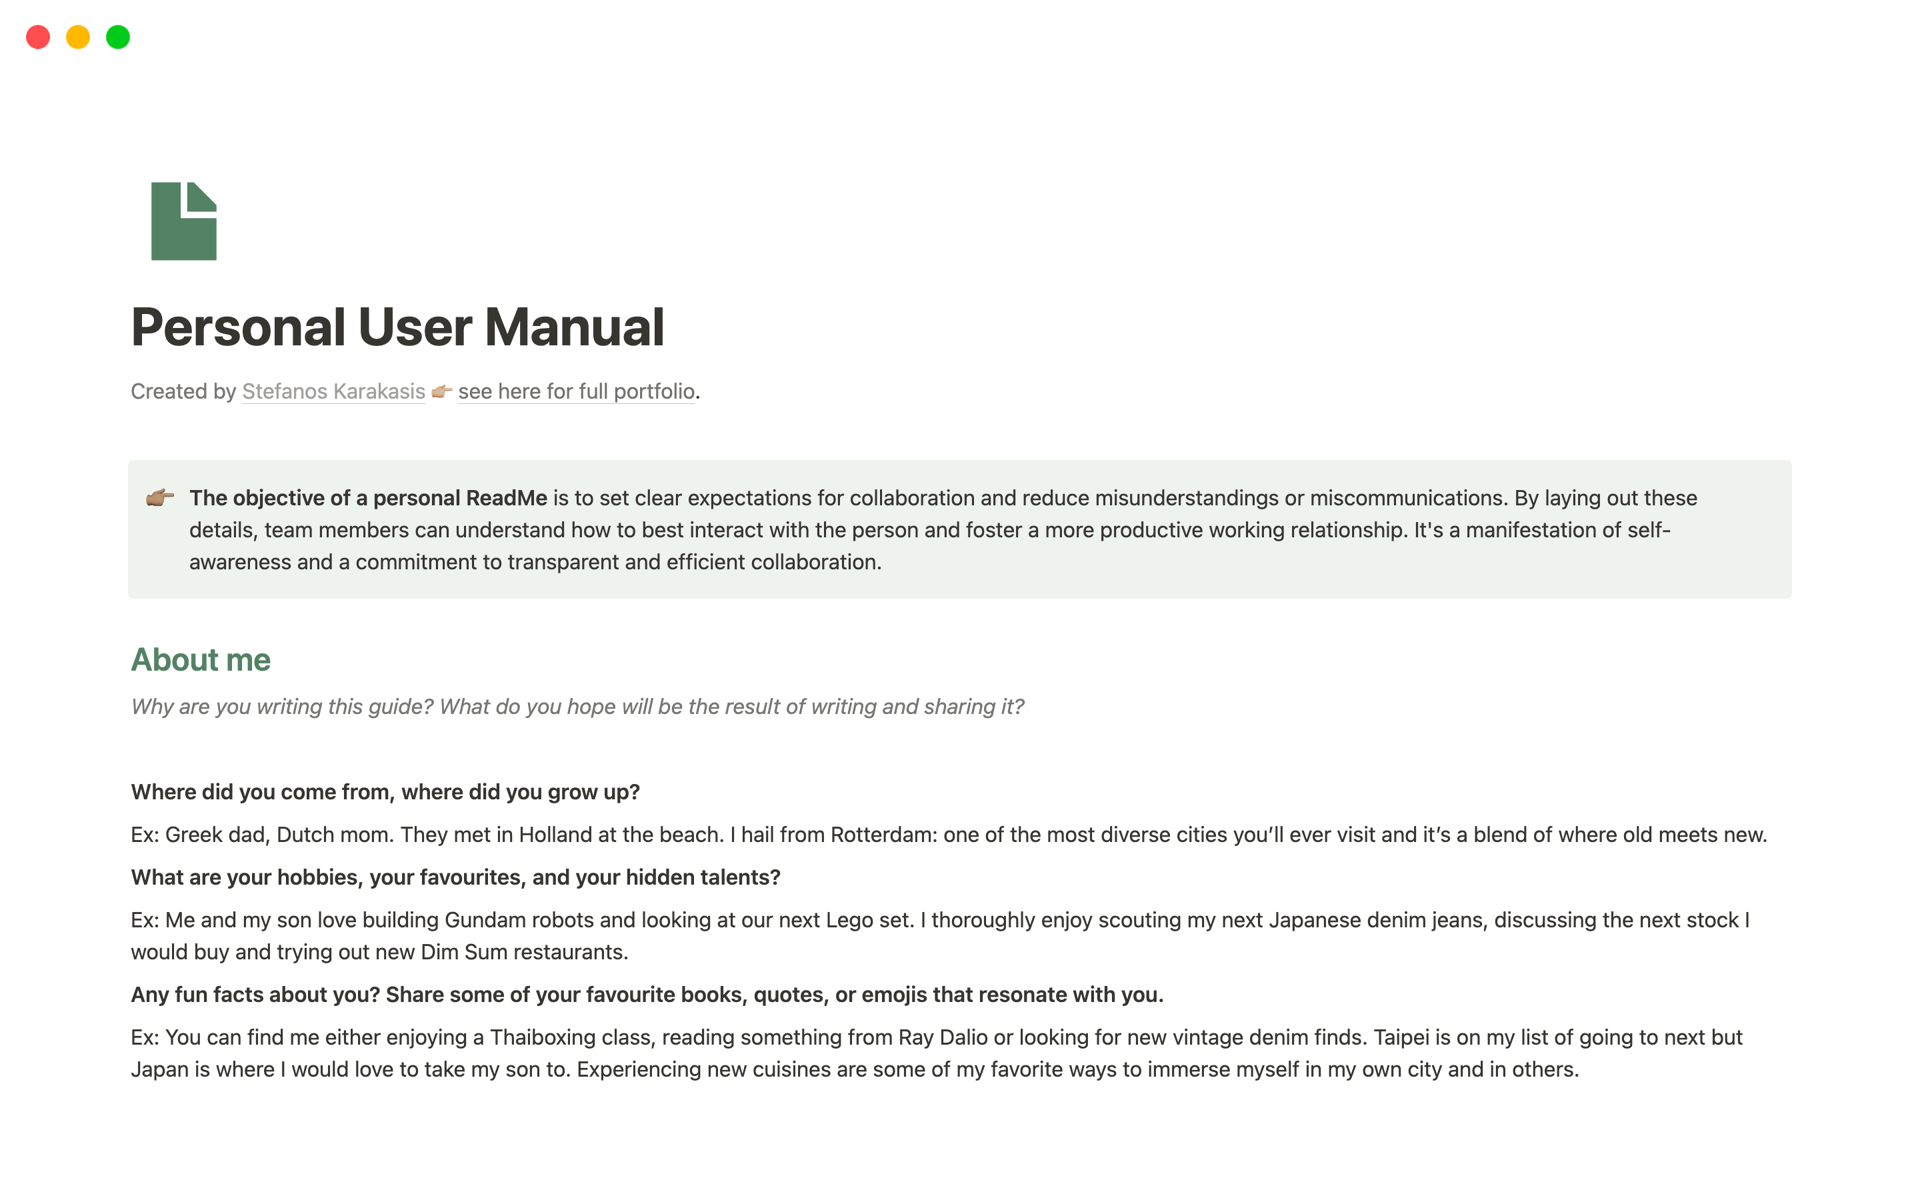 Personal User Manualのテンプレートのプレビュー